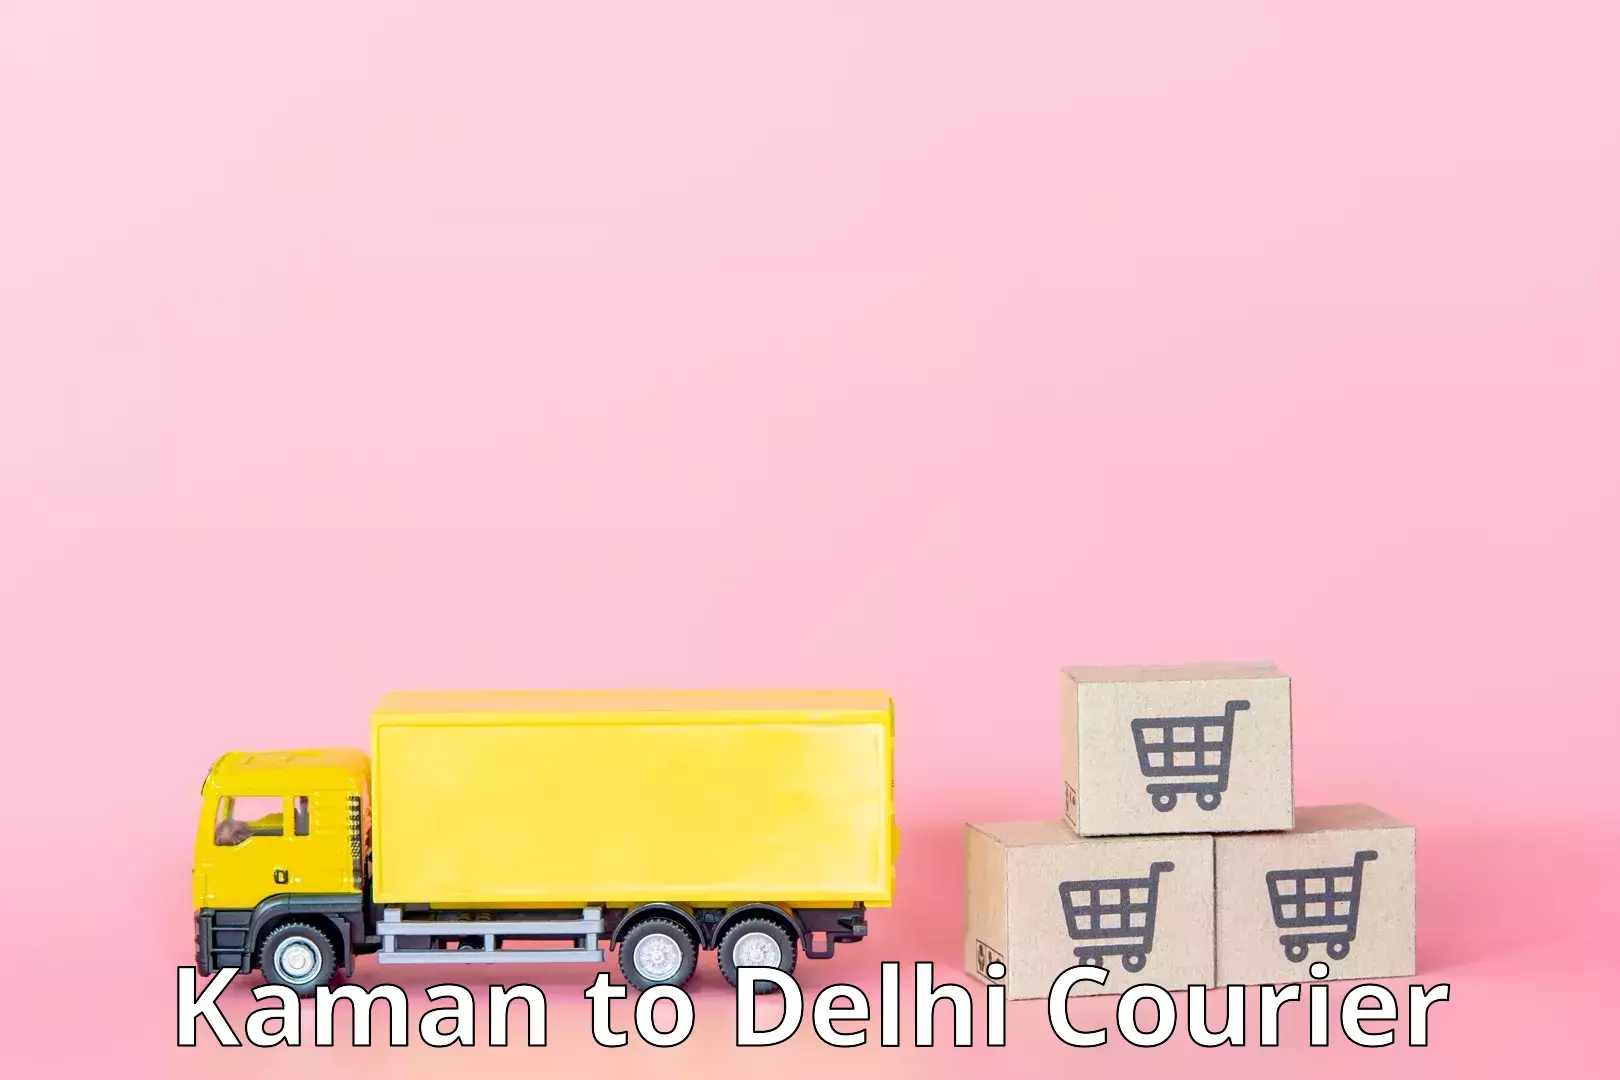 Courier service comparison Kaman to Delhi